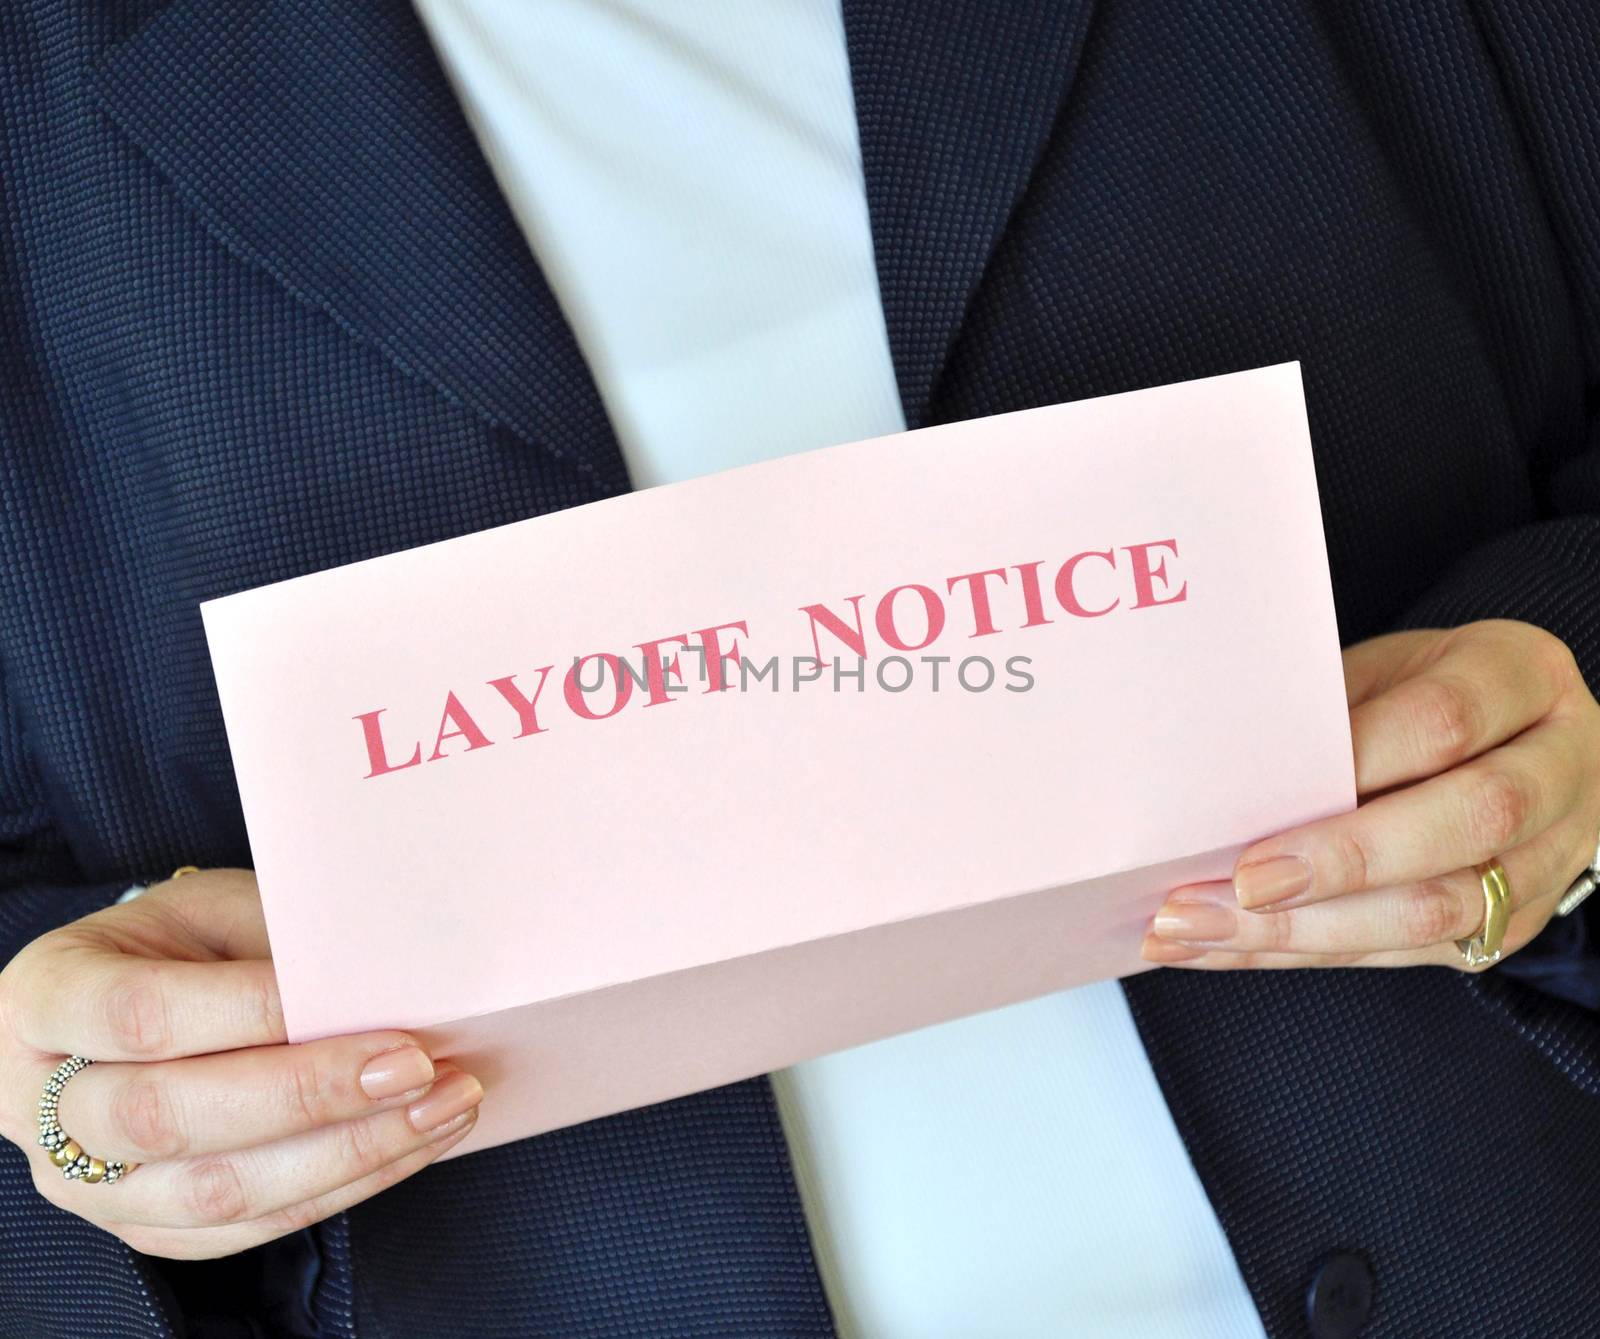 Layoff notice by svanhorn